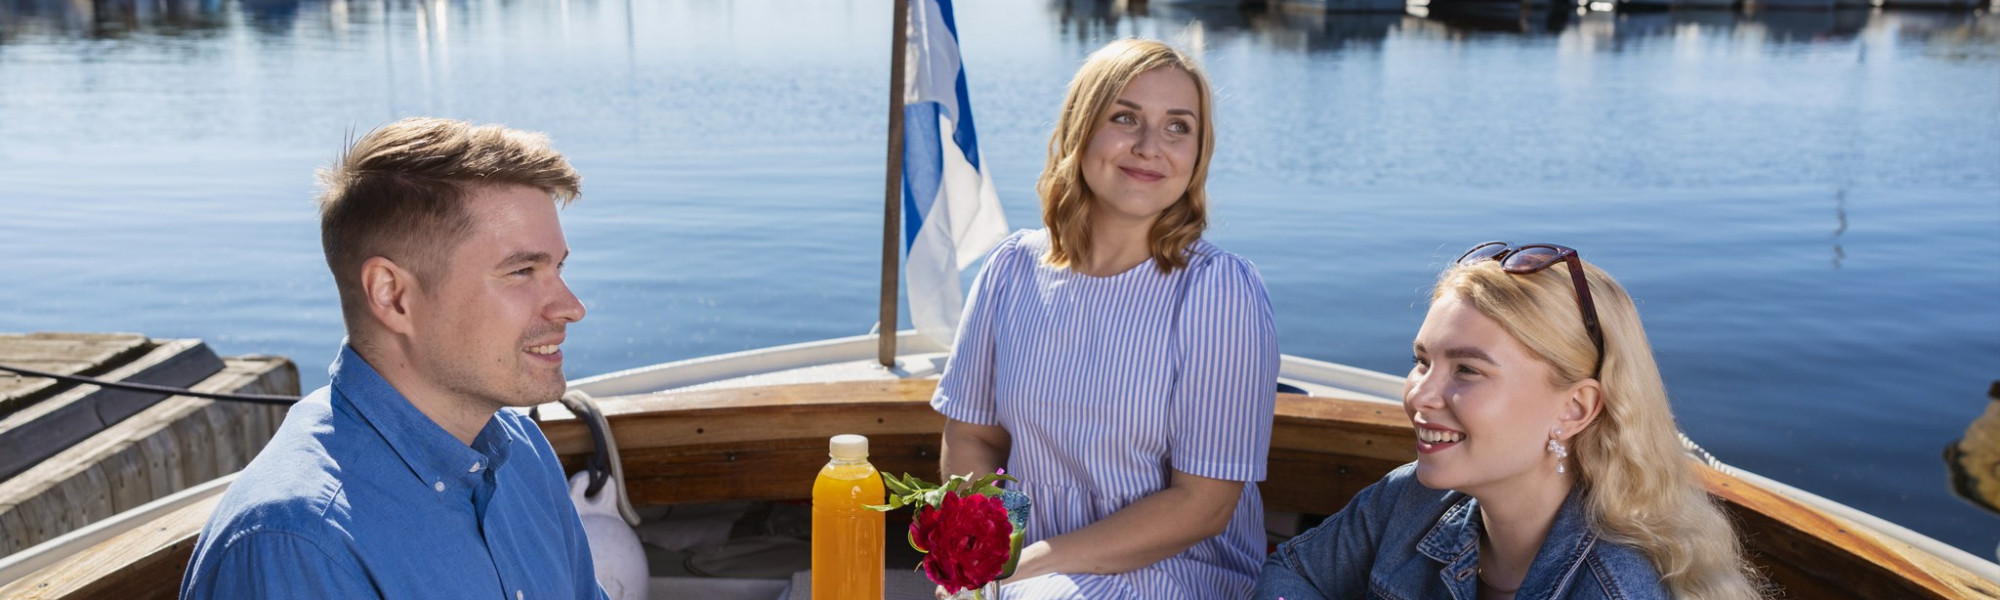 Kuvassa ihmiset syövät eväitä veneellä. Taustalla näkyy vesistö ja Suomen lippu.